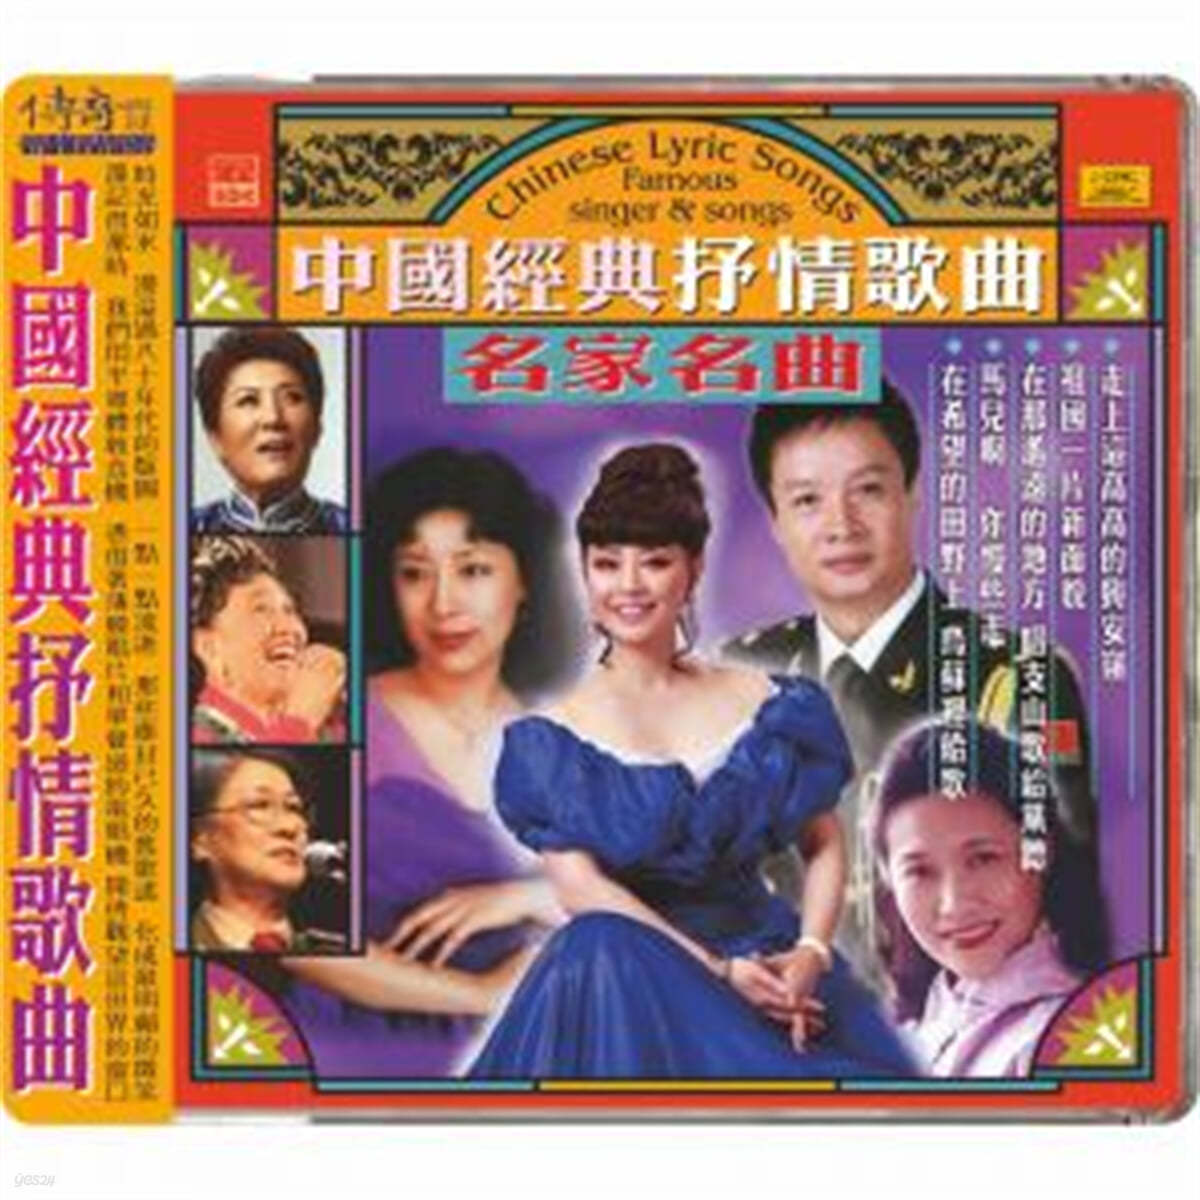 60-80년대 중국 본토의 유명 가수들이 노래한 대중가요 모음집 (Chinese Lyric Songs : Famous Singer &amp; Songs) 